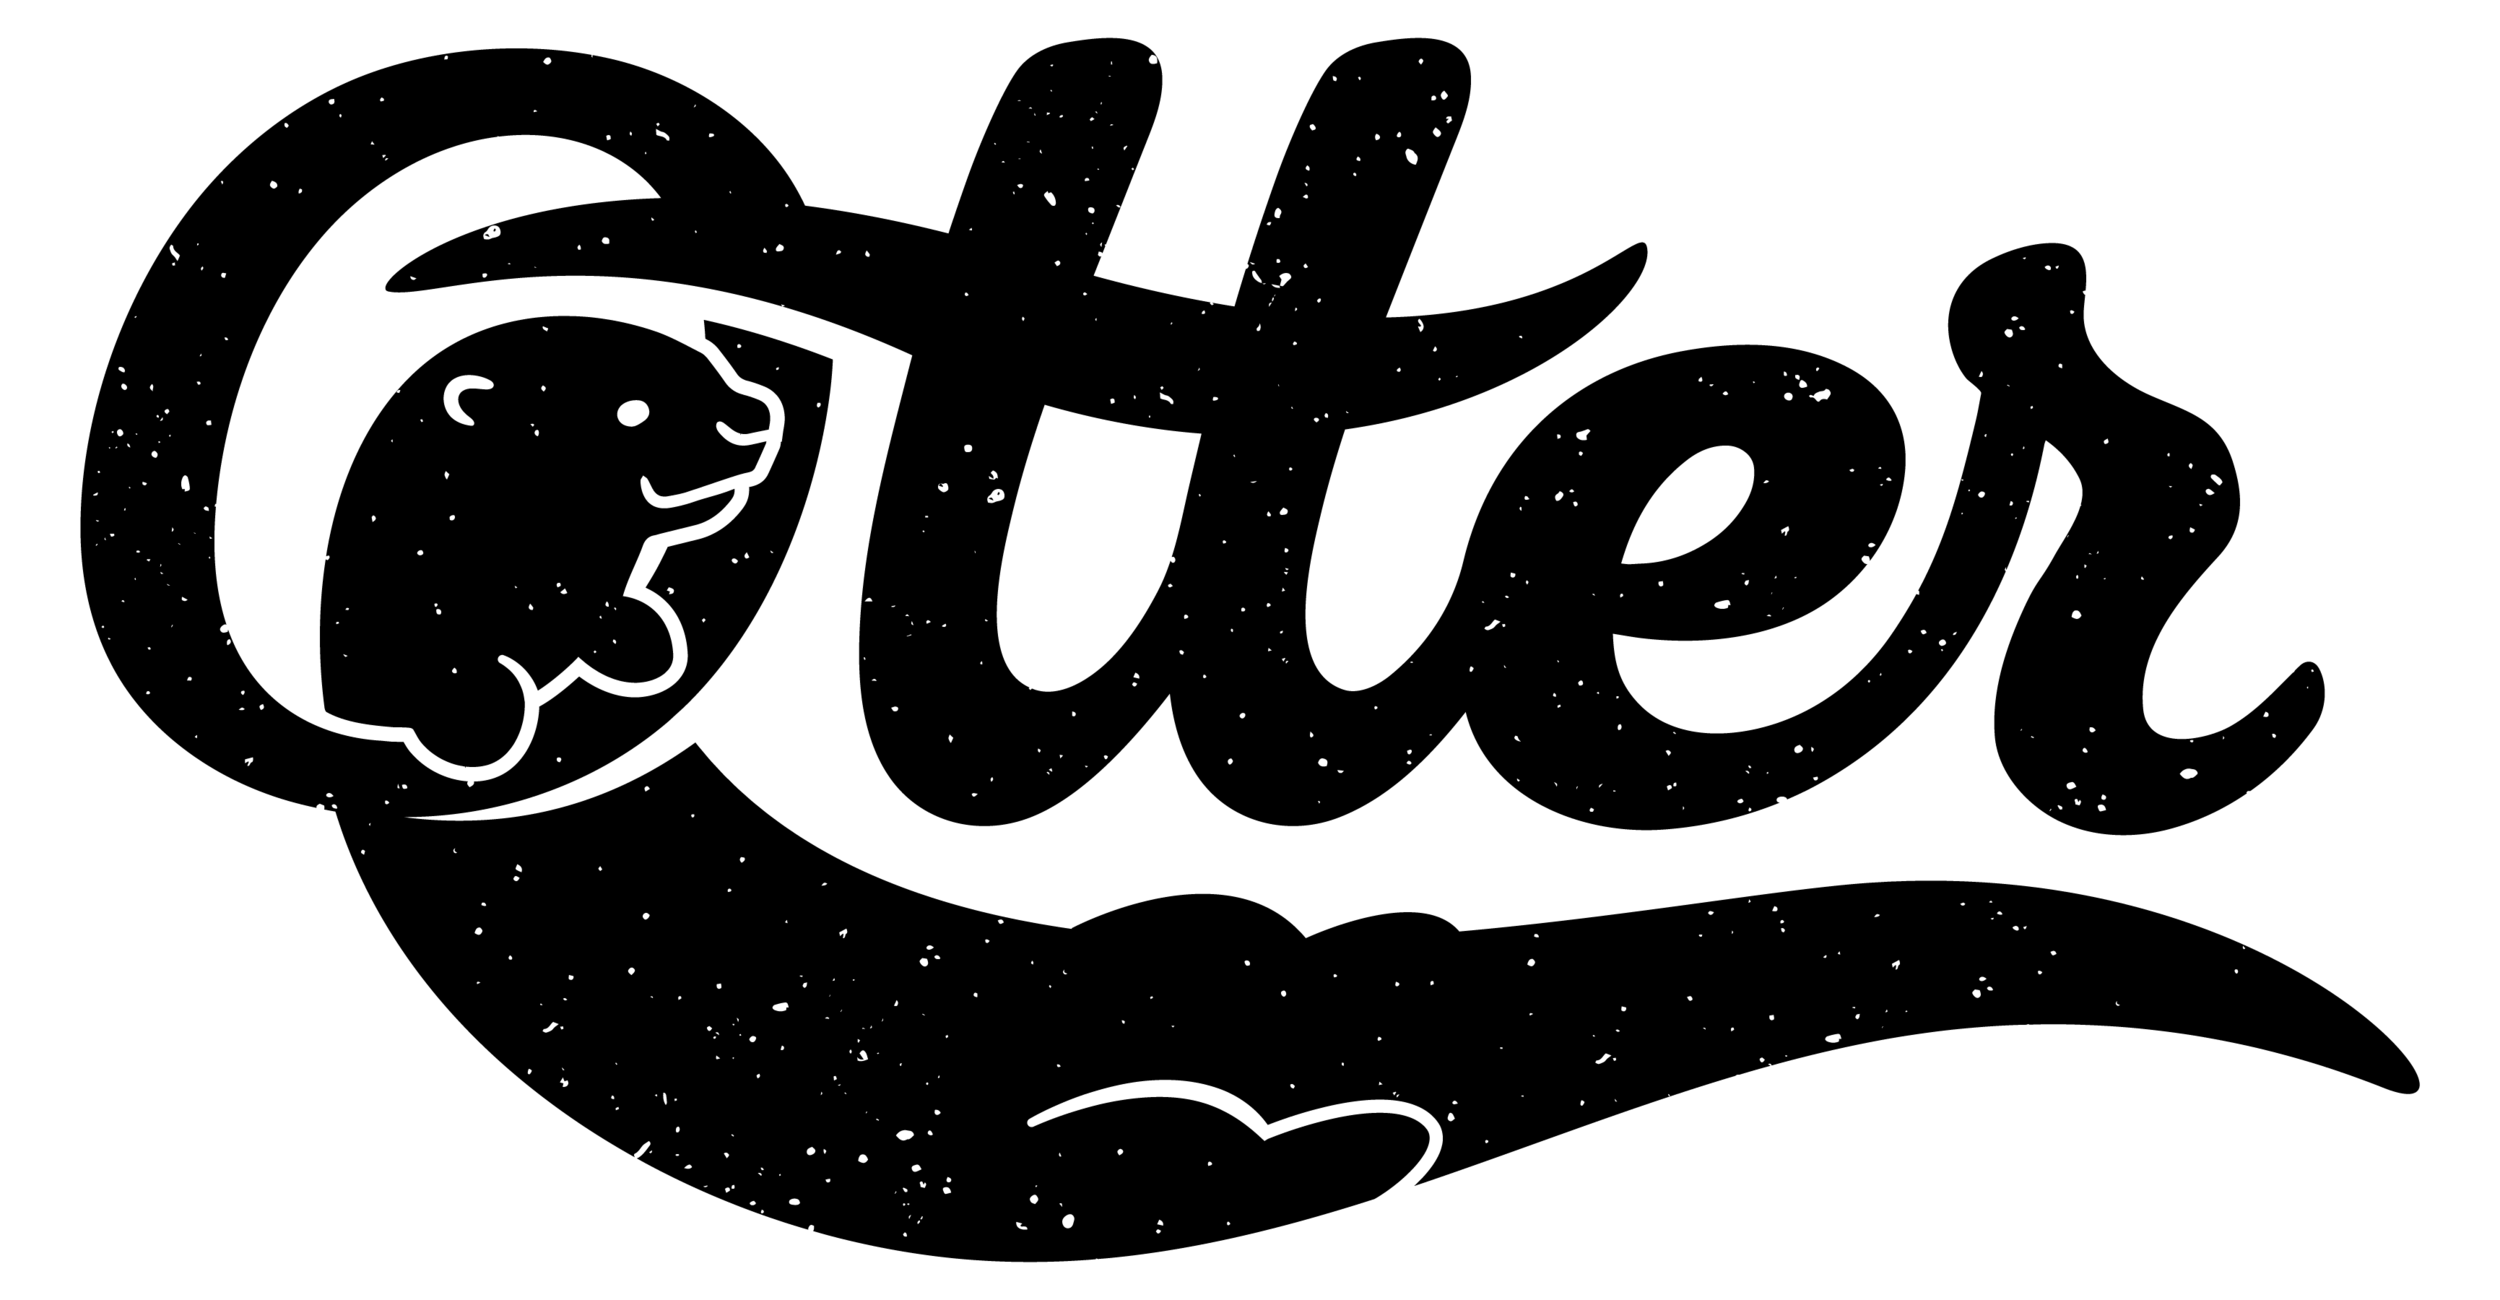 Otter Waiver logo